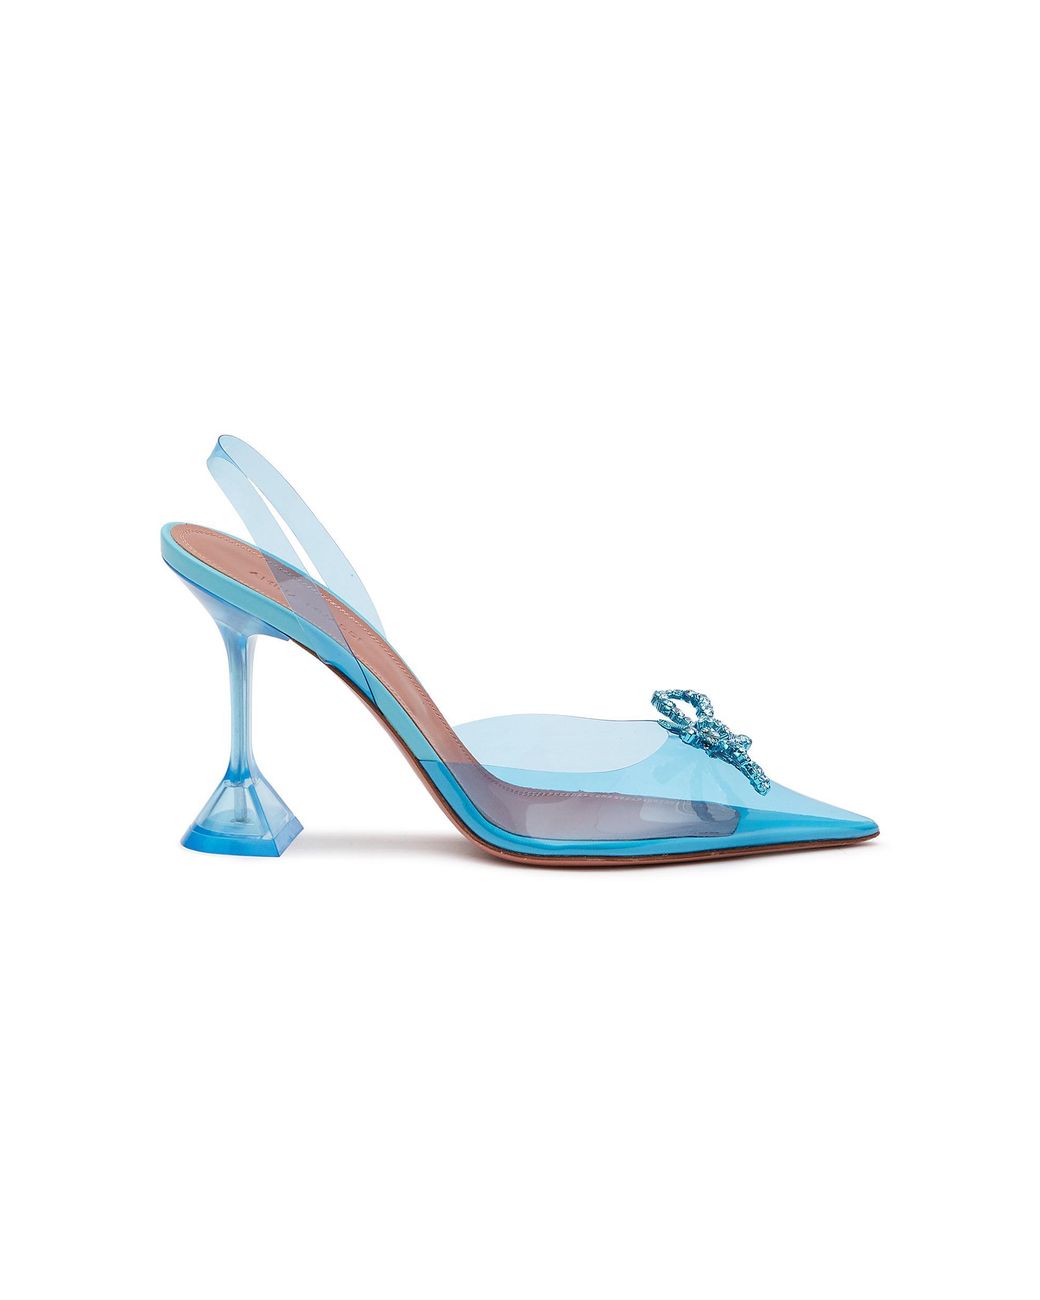 AMINA MUADDI 'rosie' Crystal Appliqué Bow Slingback Heels in Blue | Lyst